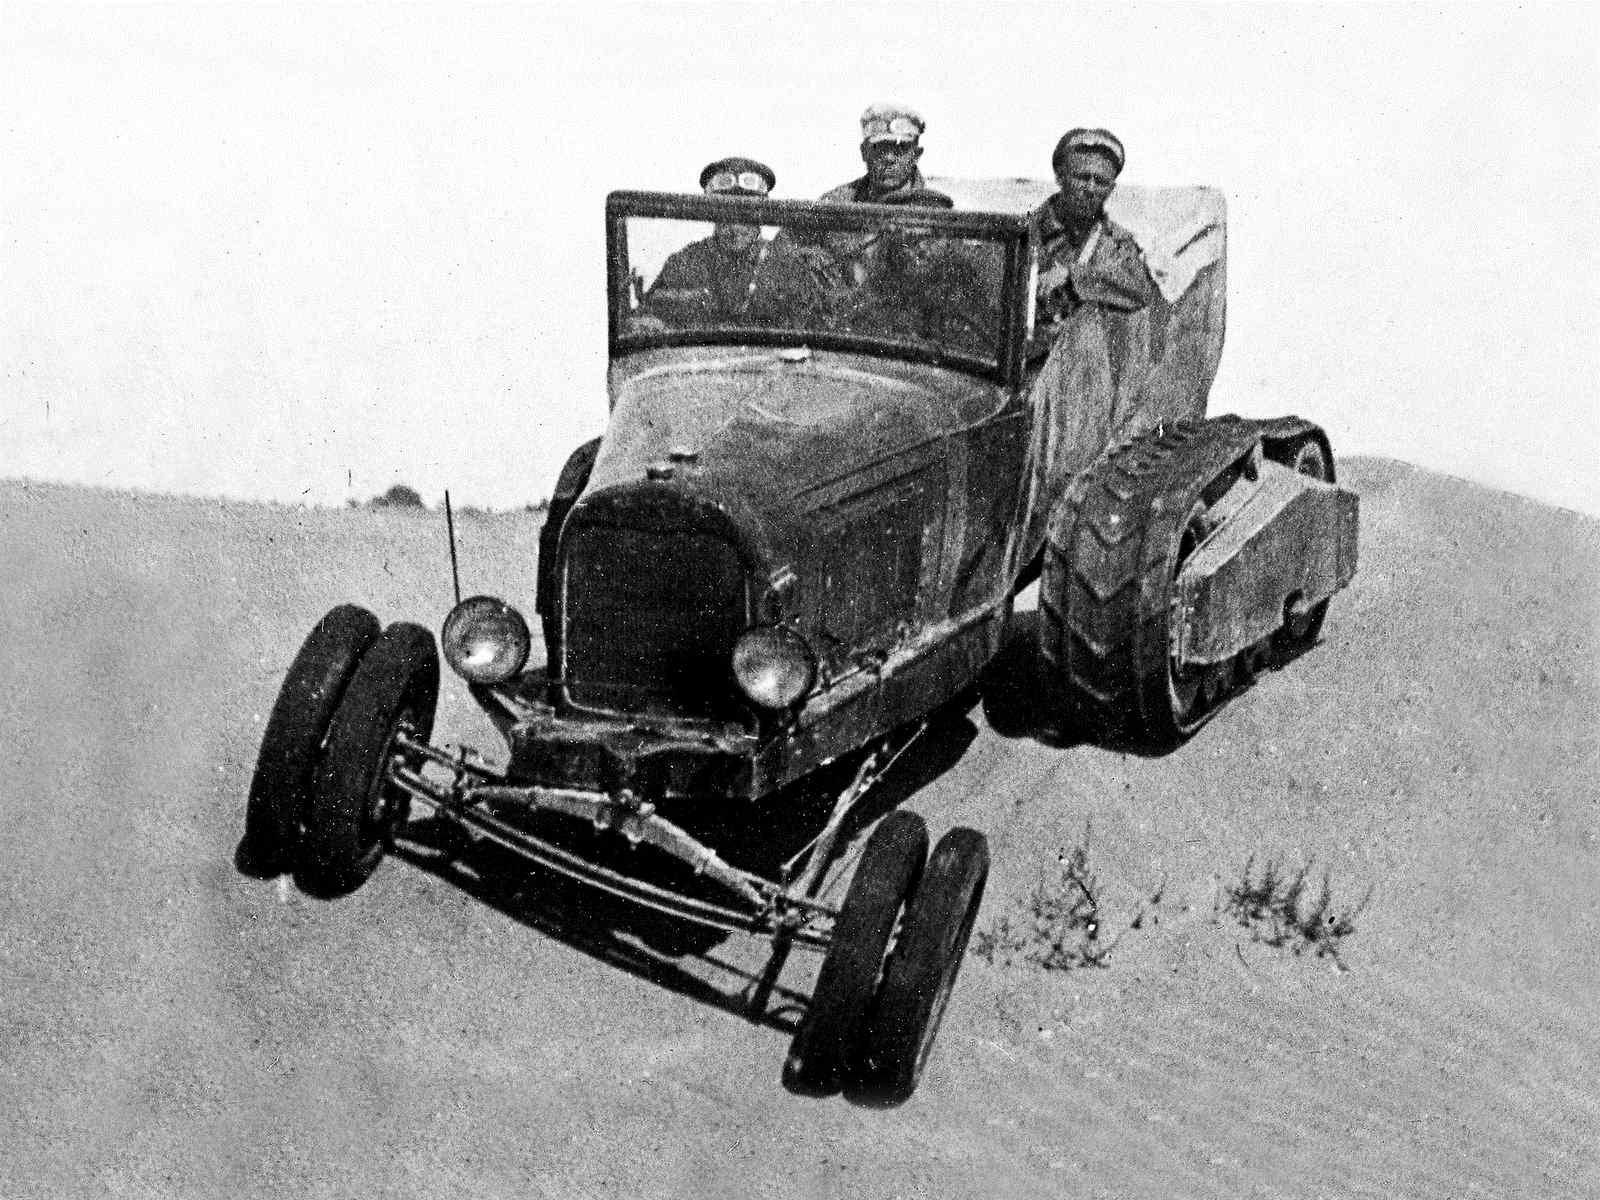 1933. НАТИ-3 на базе Ford AA